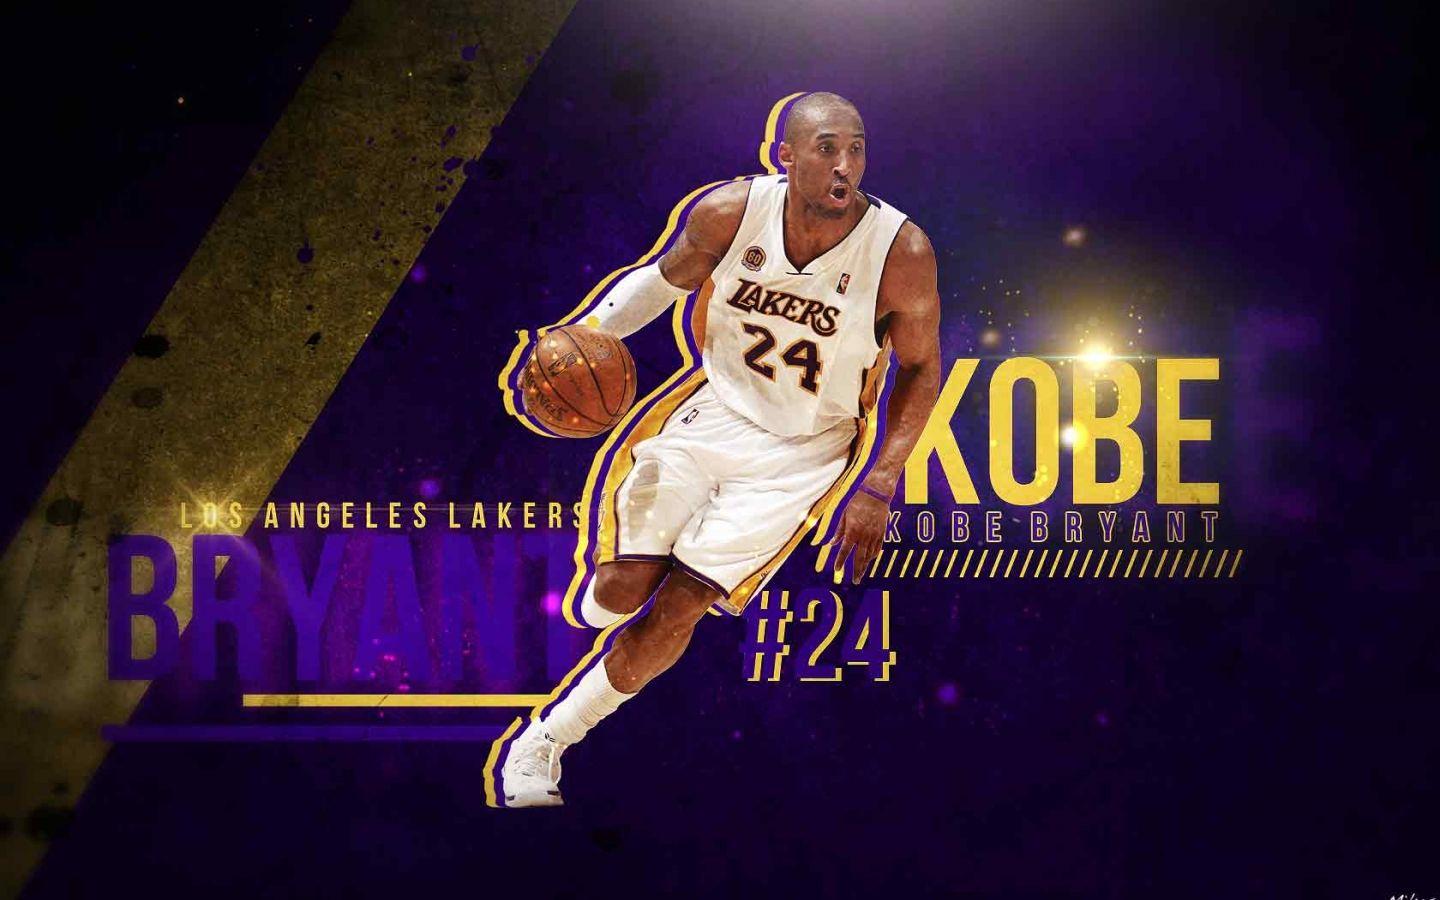 Kobe Bryant 8 HD Wallpaper. Kobe bryant wallpaper, Kobe bryant quotes, Kobe bryant